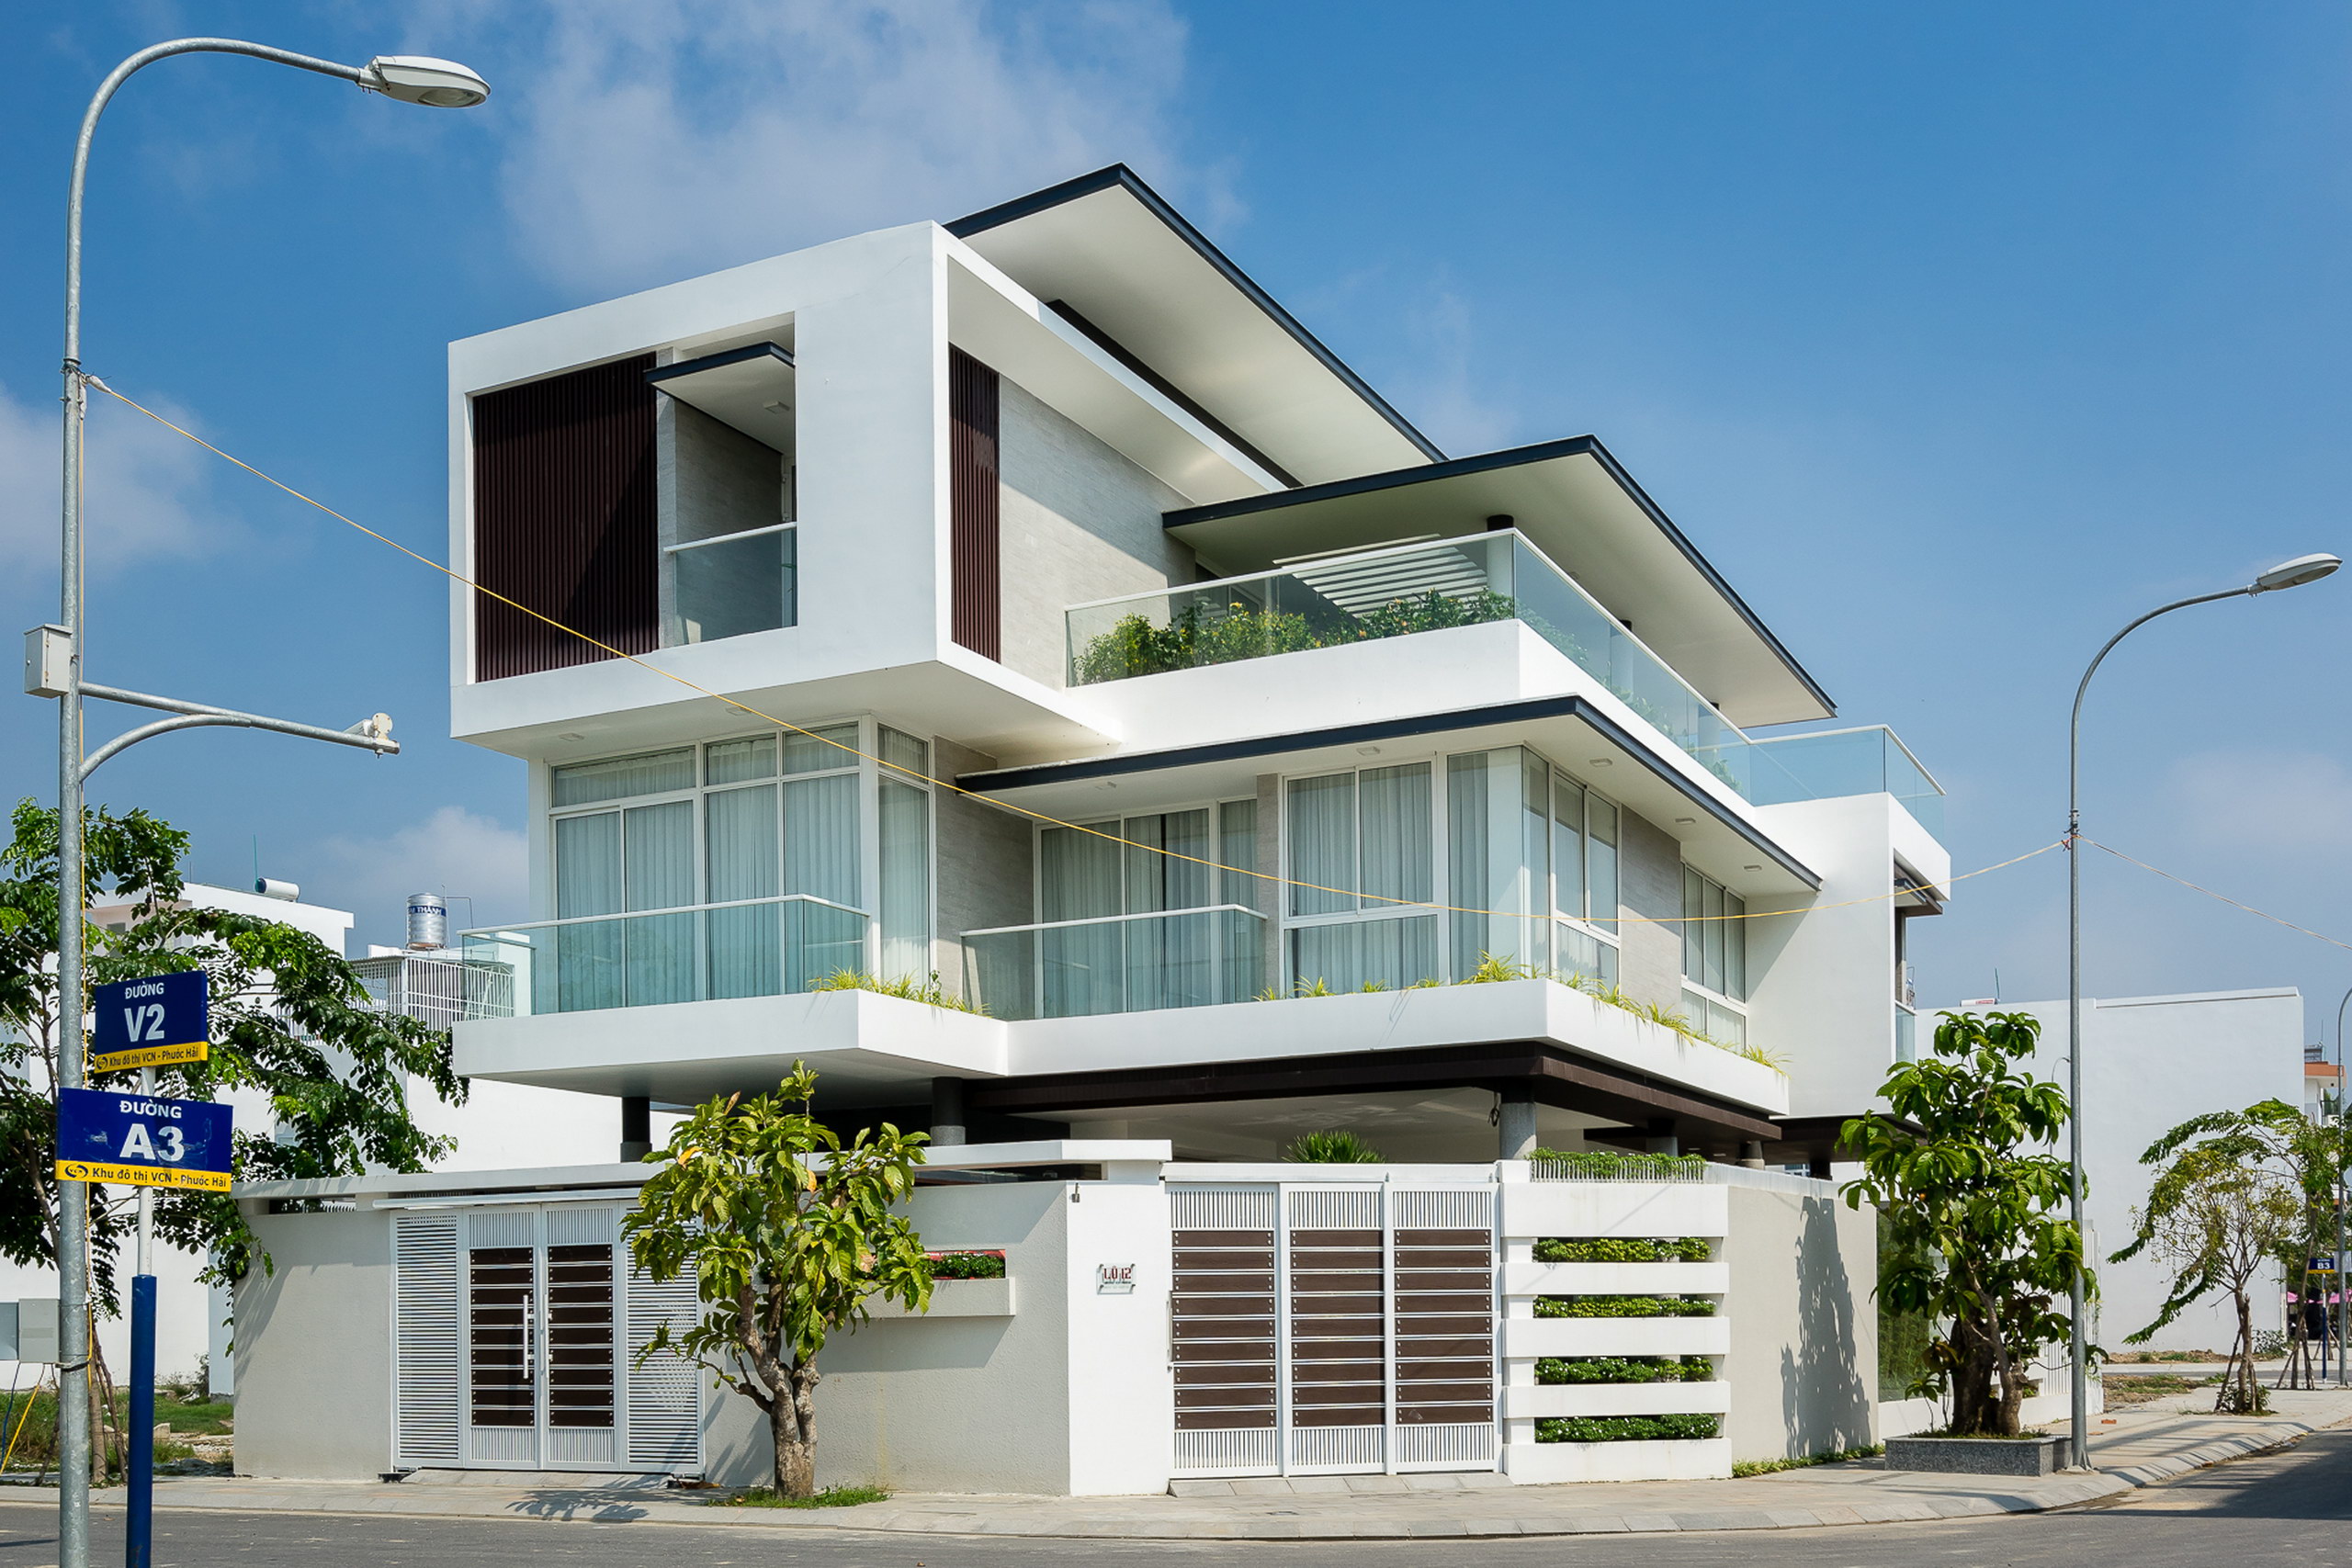 1 20 - Biệt thự lô góc 3 tầng kiến trúc hiện đại - Công trình được thiết kế tại TP biển Nha Trang